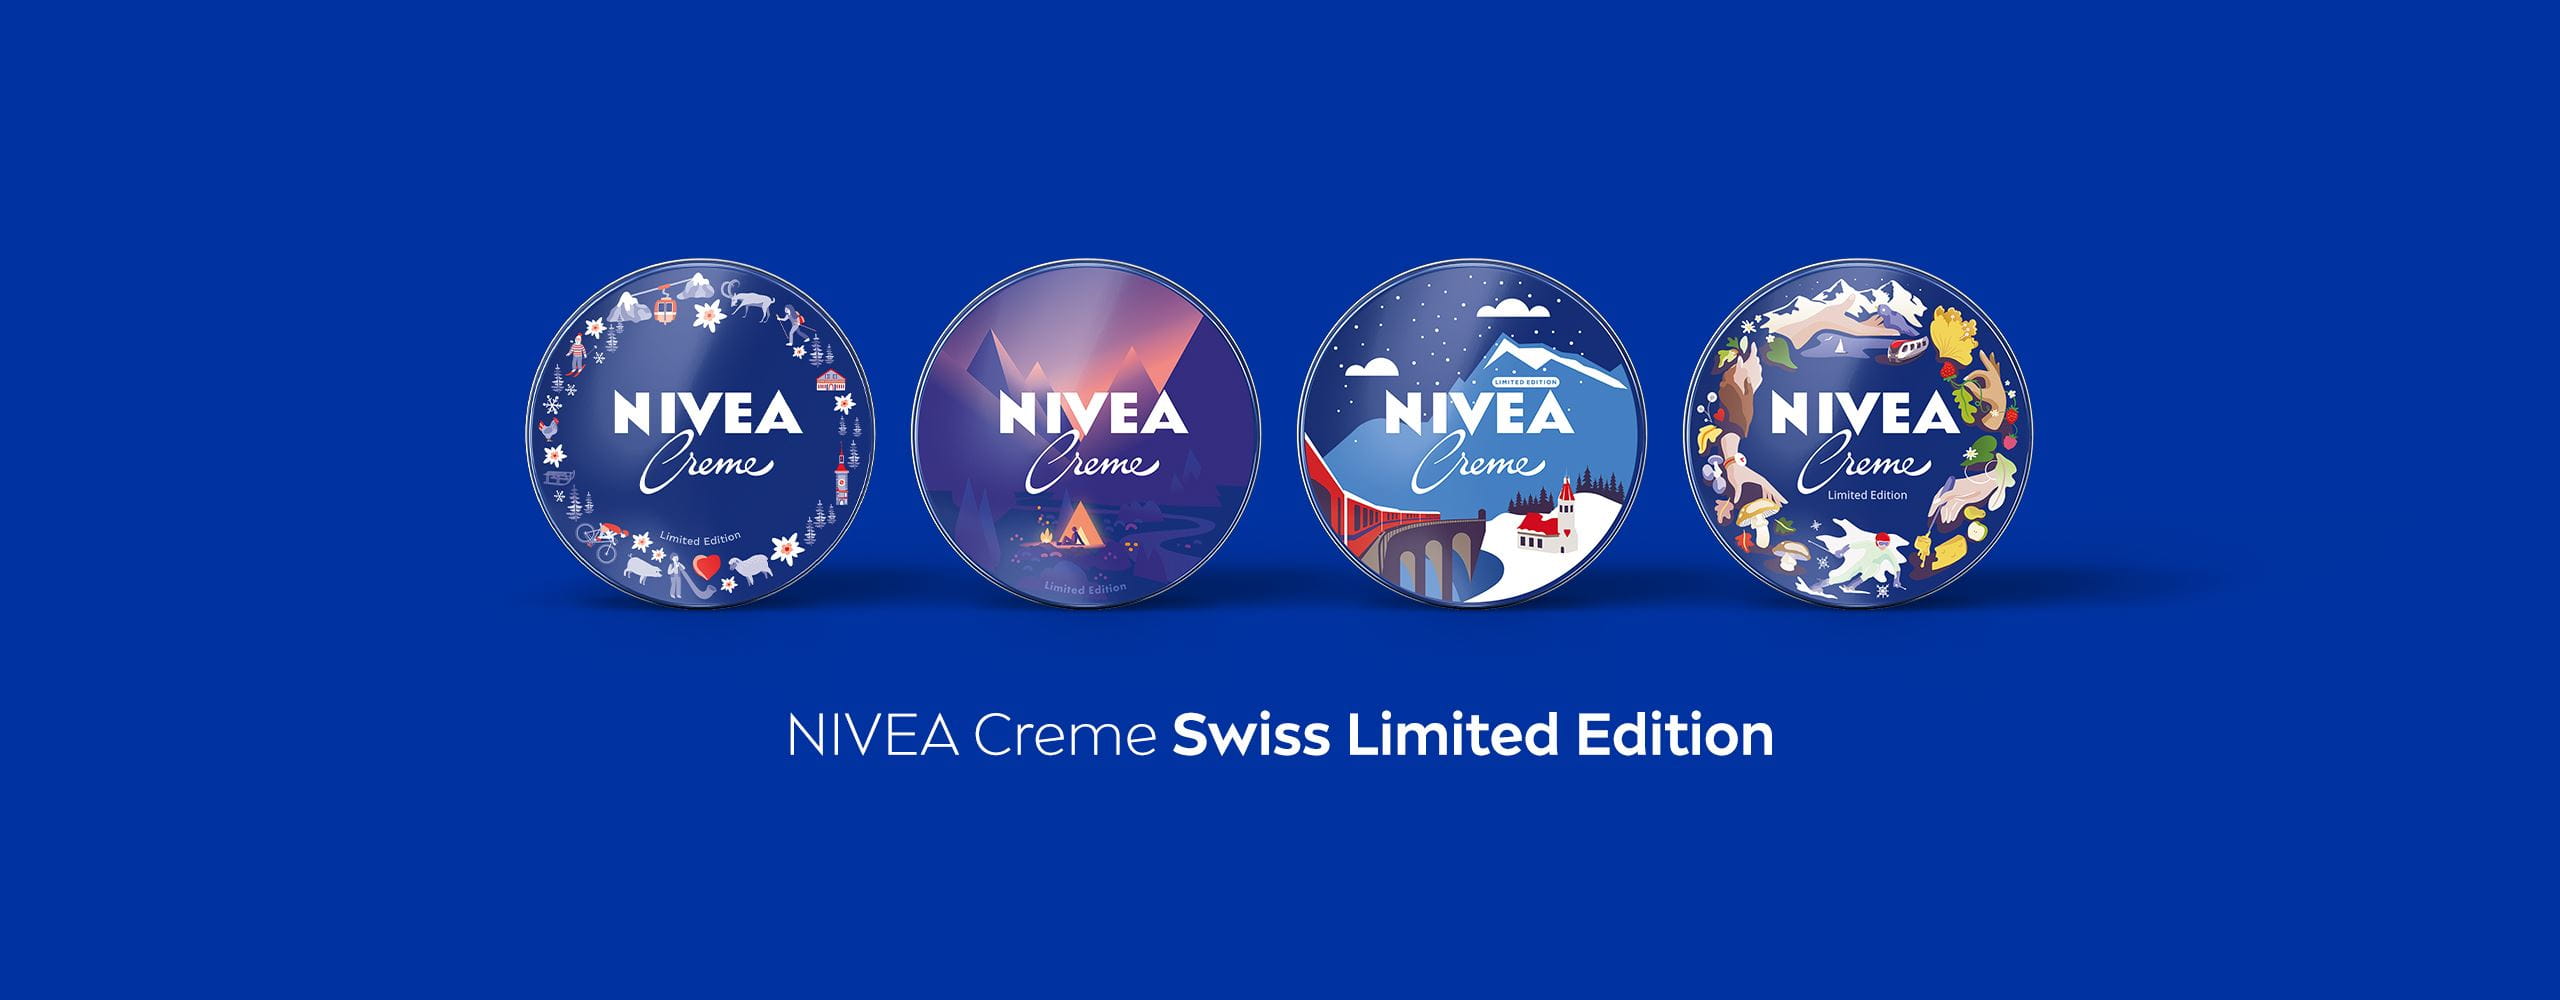 NIVEA feiert 110-Jahre-Jubiläum der NIVEA Creme